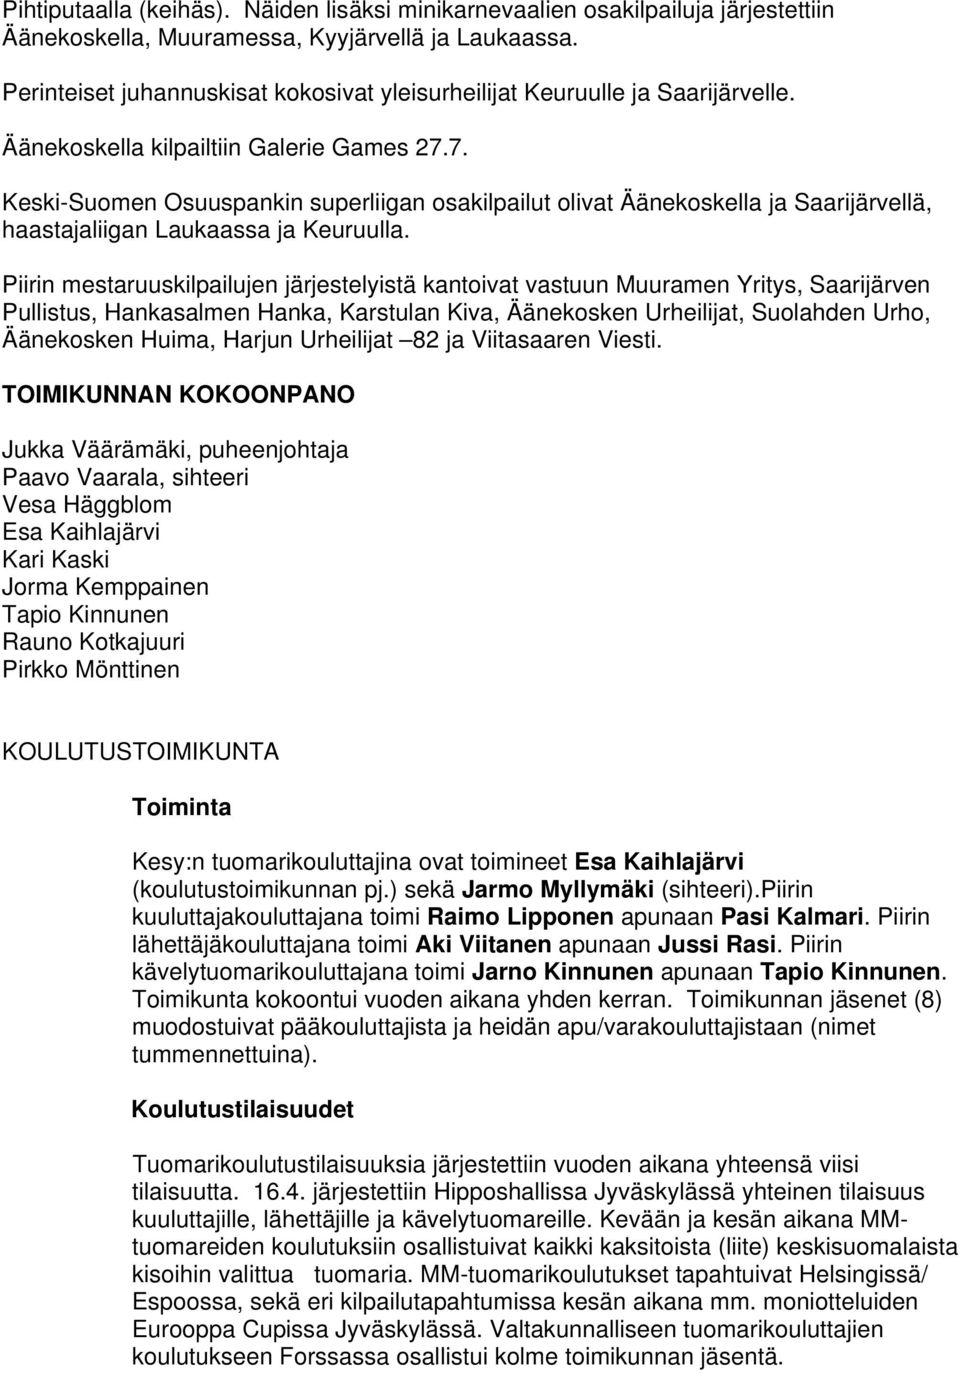 7. Keski-Suomen Osuuspankin superliigan osakilpailut olivat Äänekoskella ja Saarijärvellä, haastajaliigan Laukaassa ja Keuruulla.